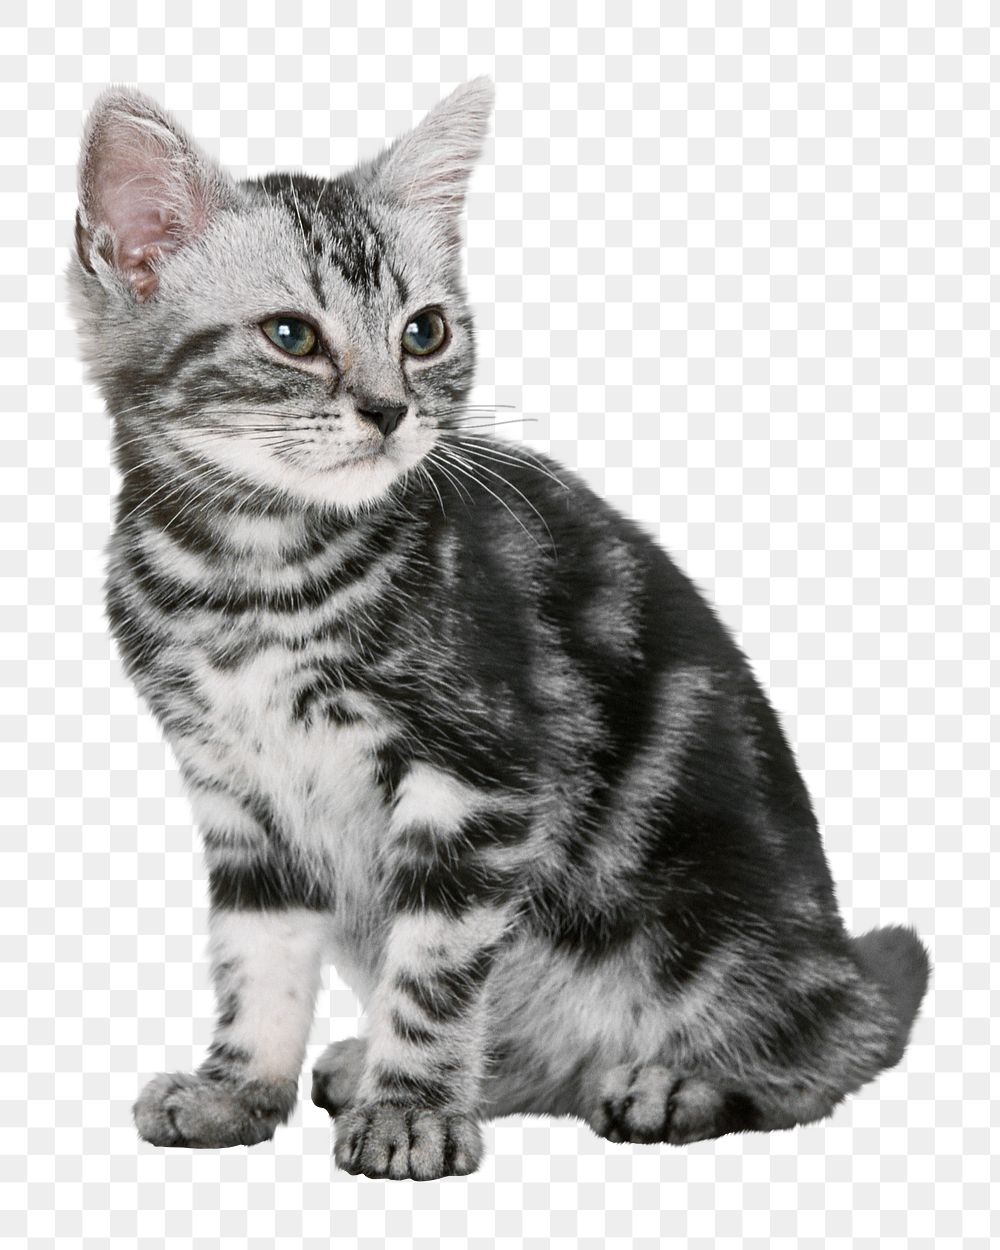 British shorthair kitten png sticker, transparent background